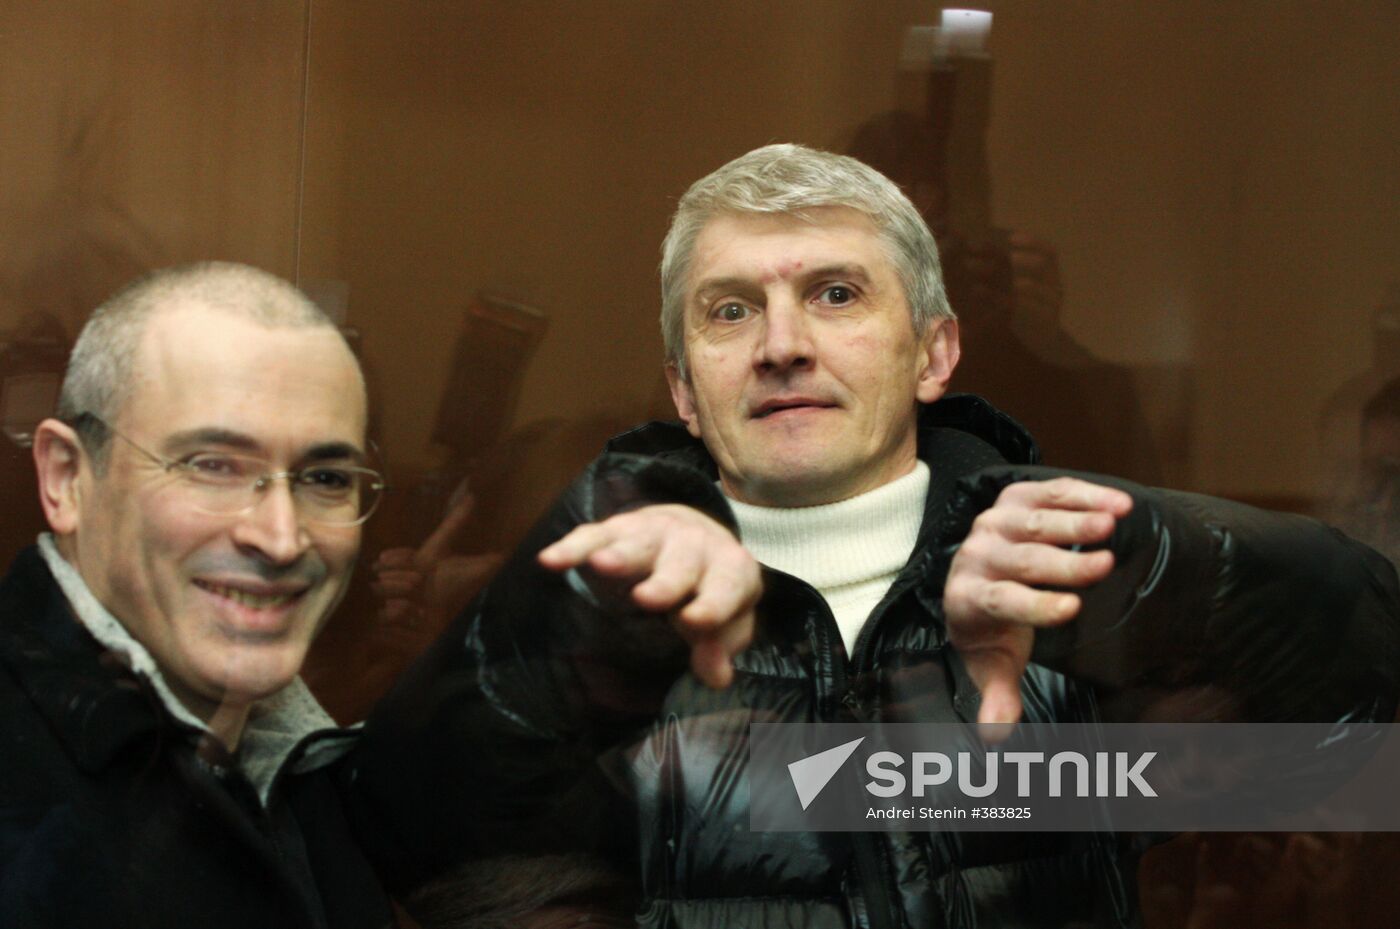 Mikhail Khodorkovsky and Platon Lebedev on trial